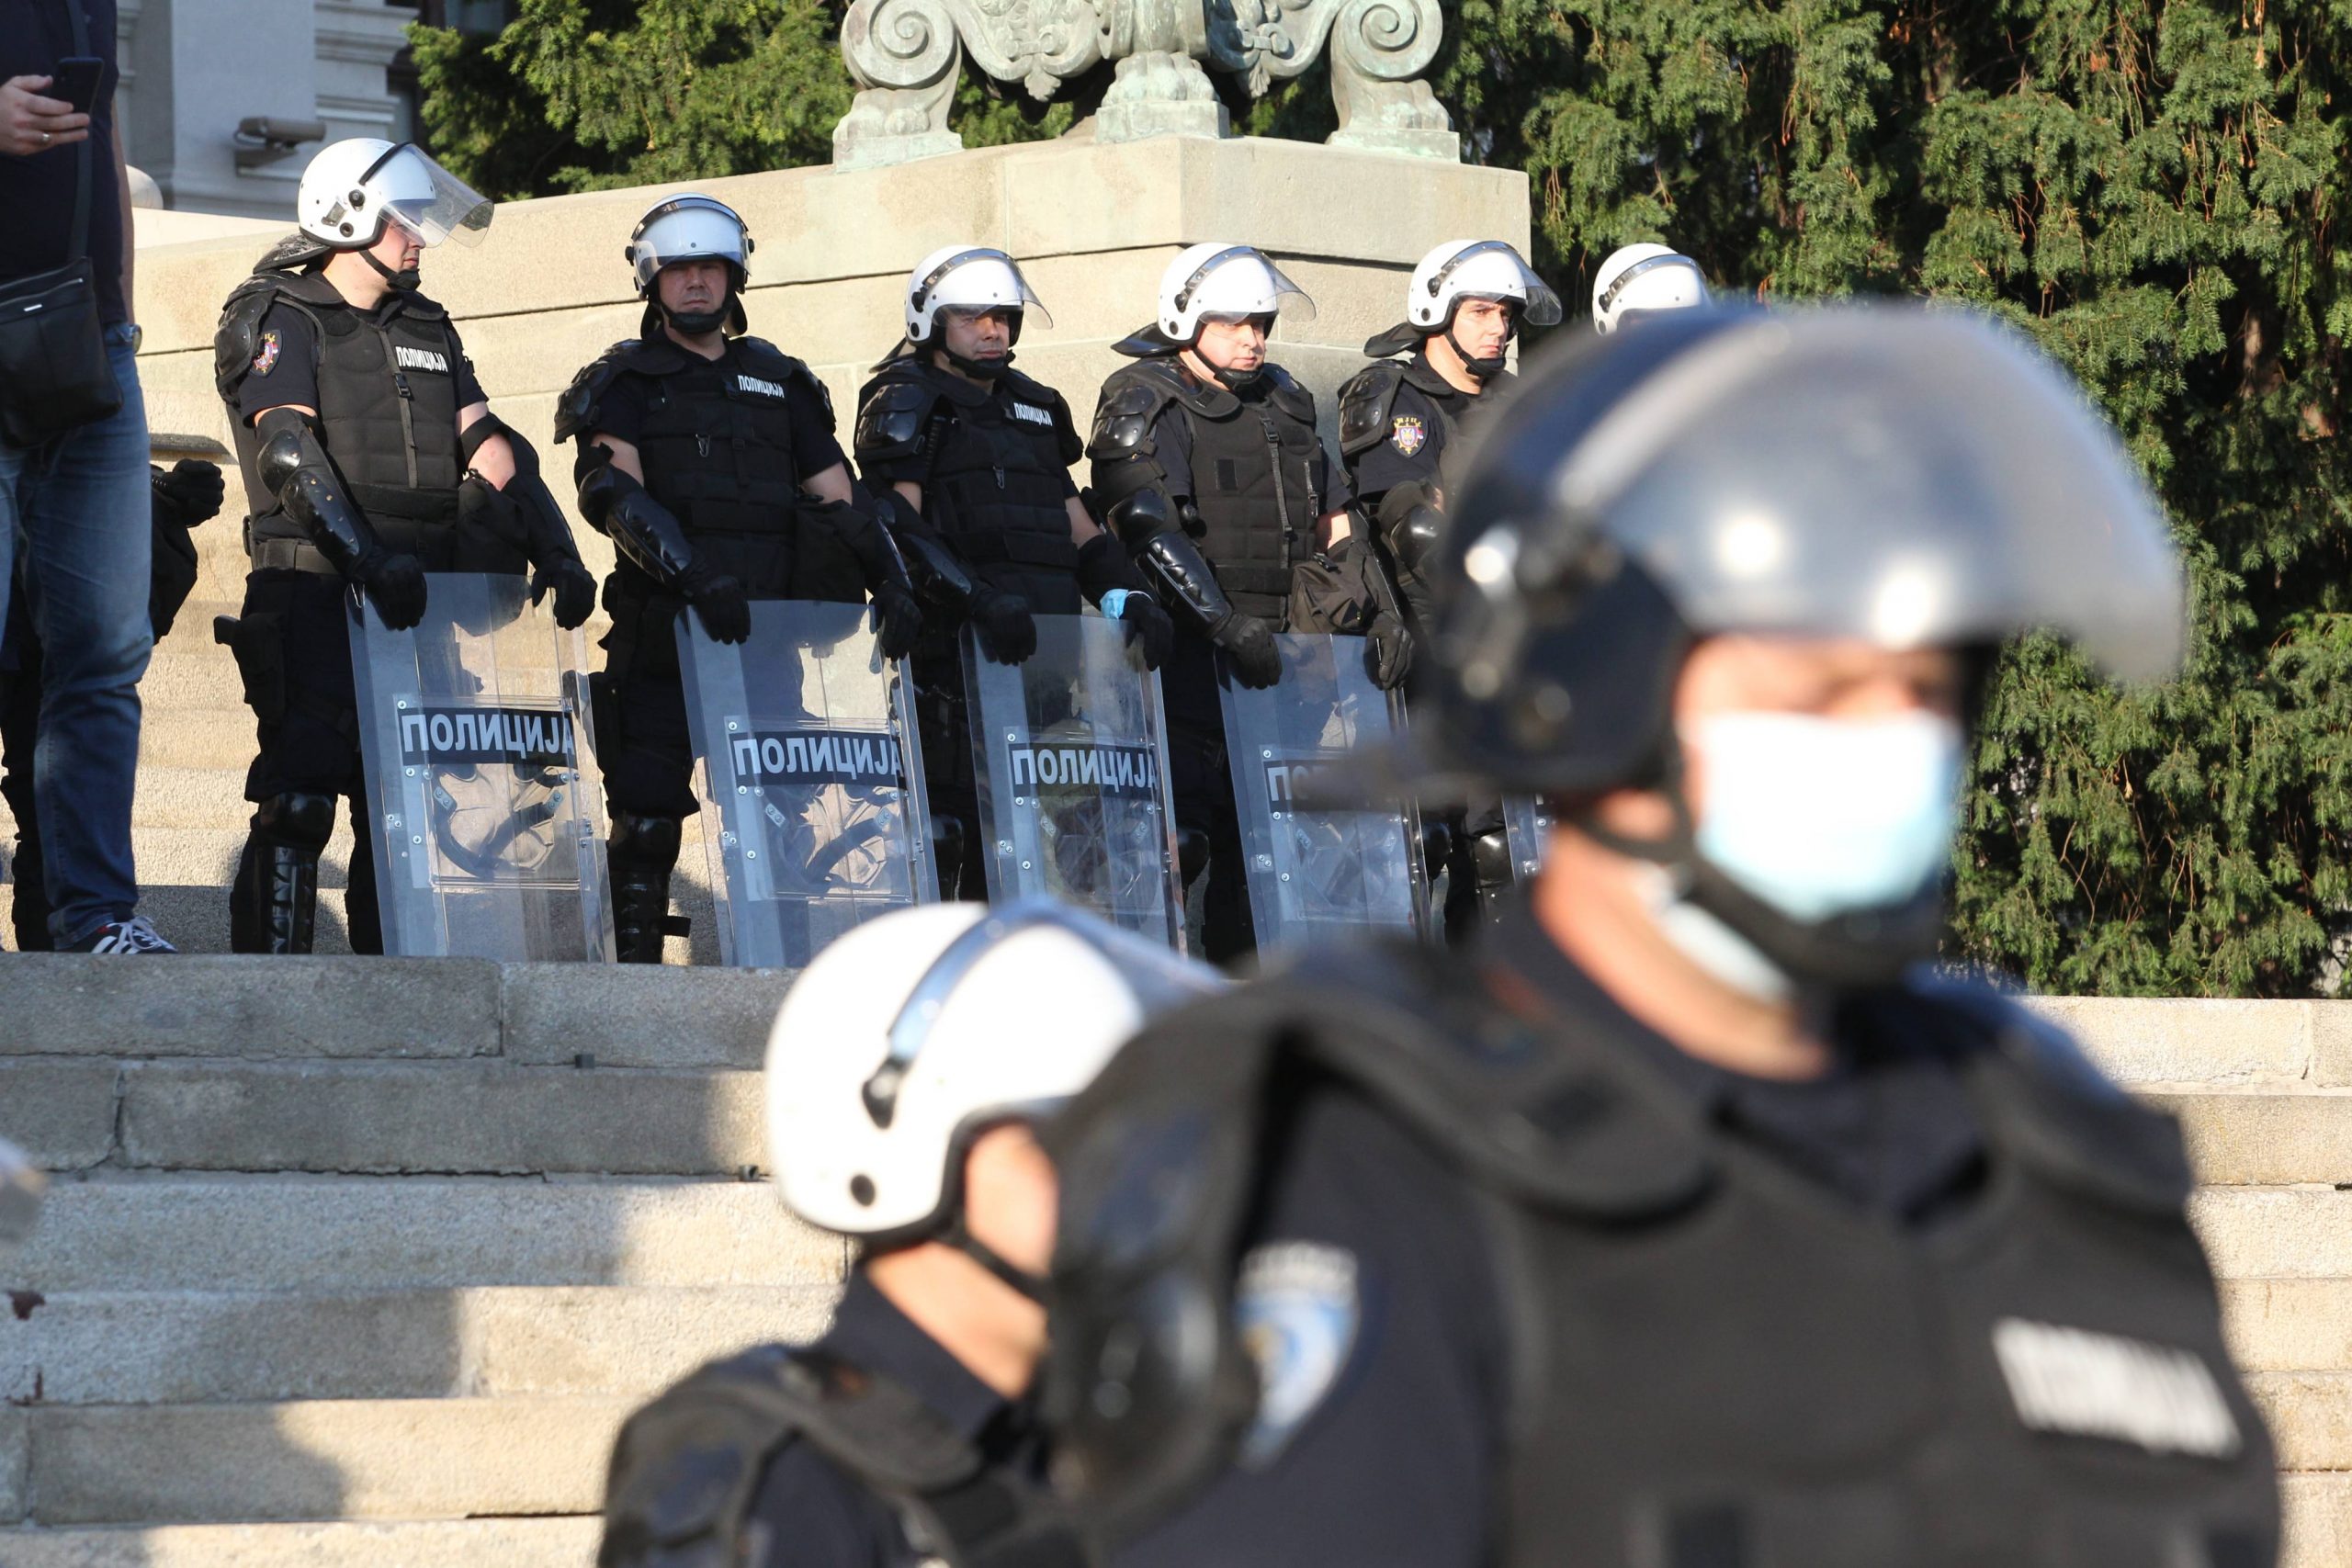 Beogradska policija: Odbačena prijava skupa o KiM ispred Skupštine u vreme zasedanja 2. februara 1